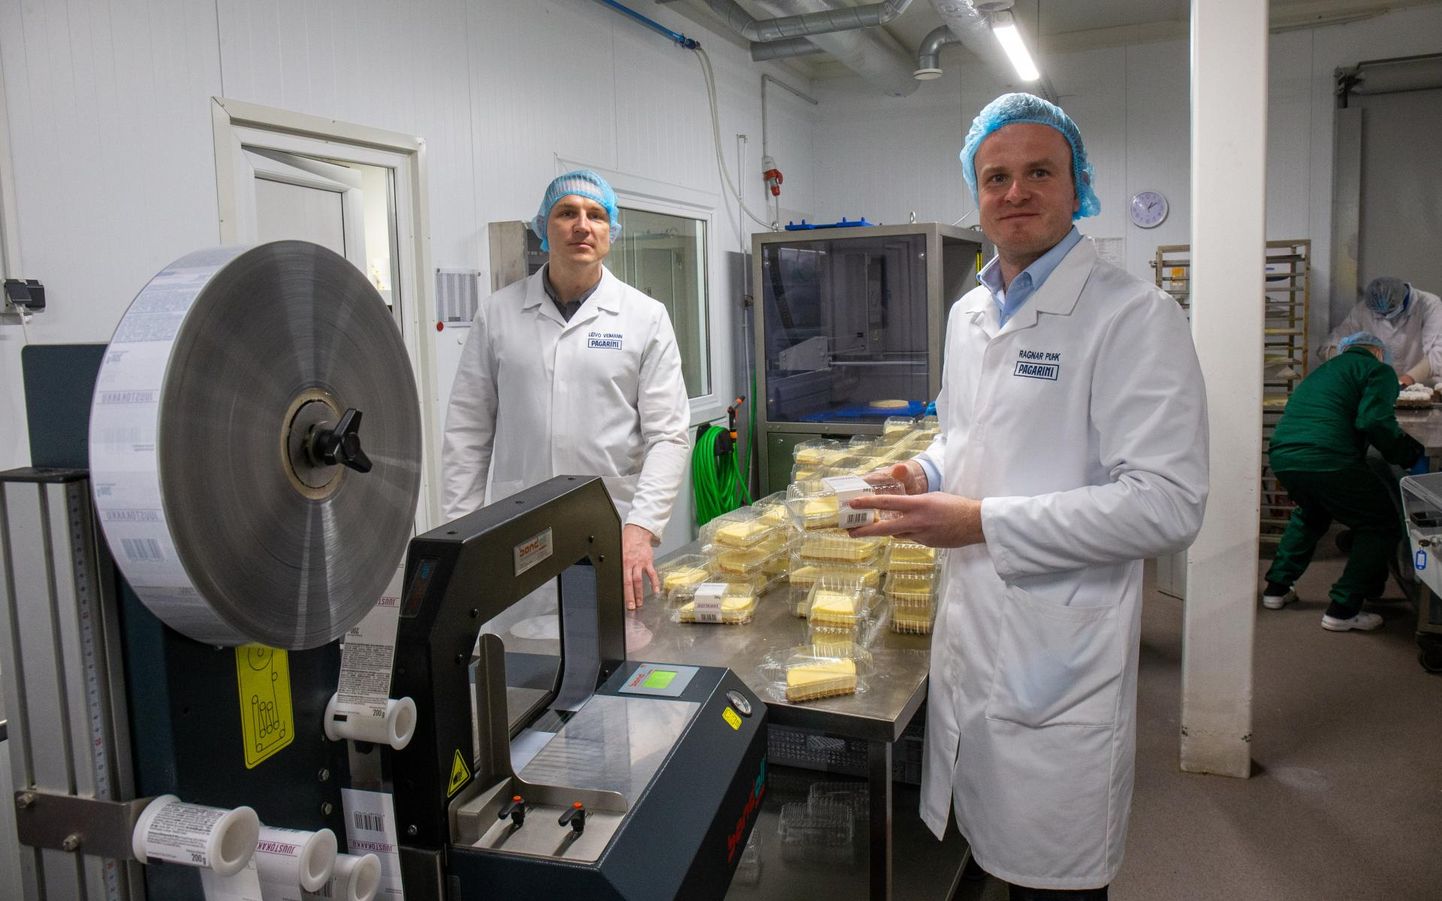 Pagarini tootmisjuht Leivo Veimann ja juhataja Ragnar Puhk näitasid juustukooke, mis viiakse kahe lõigu kaupa pakendatult Soome poodidesse.